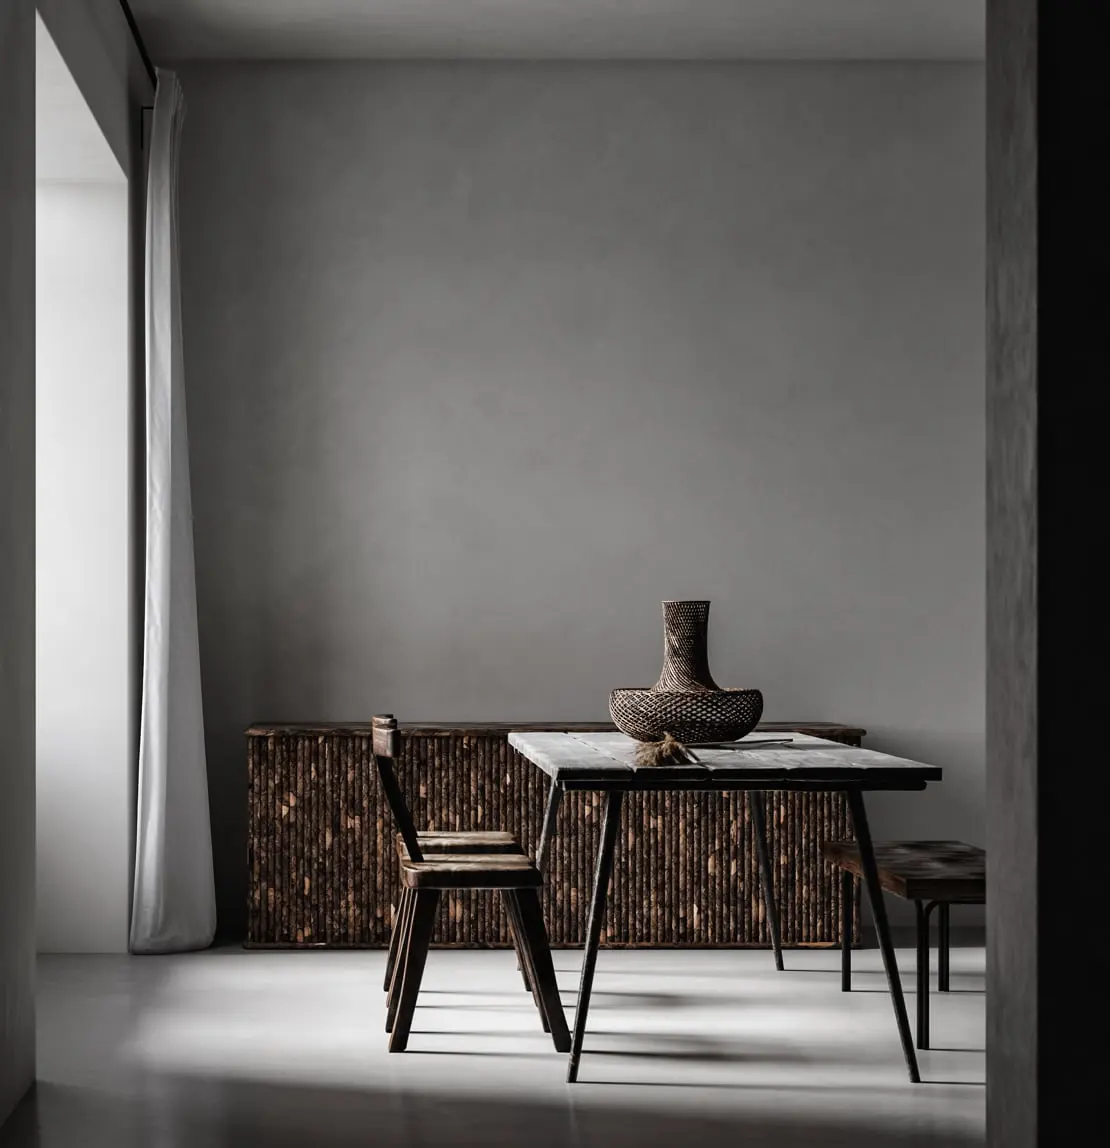 Mikrozementwand in einem minimalistischen Wohnzimmer, dekoriert in Grautönen